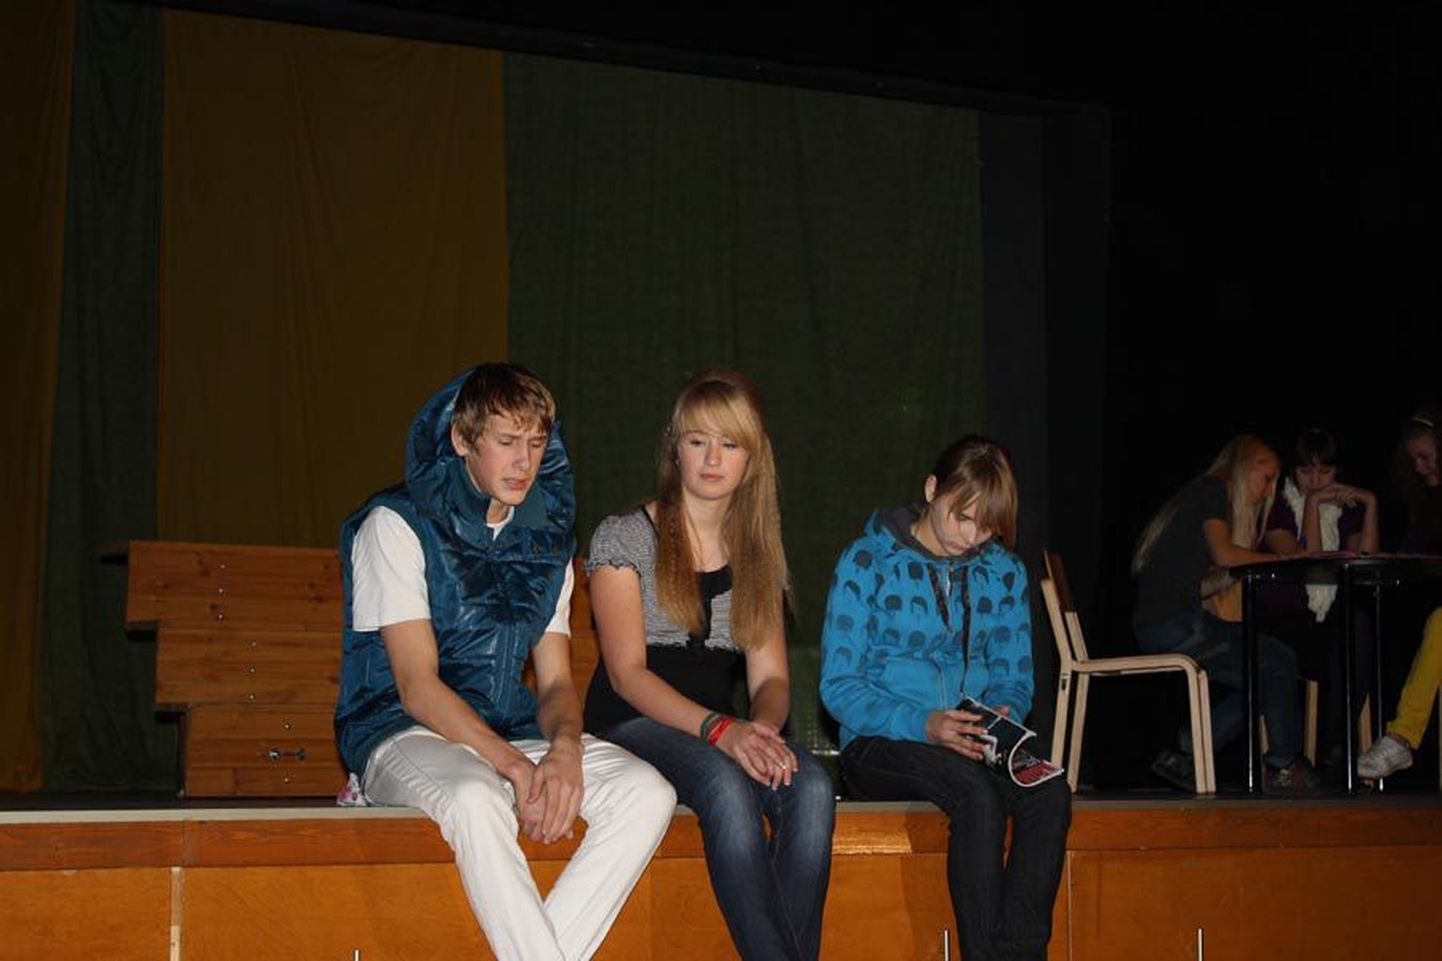 Karksi-Nuia Noorteteatri „0“ näitlejad Rimo Soots (vasakult), Margit Sillaste ja Sirli Pärn esitasid tõestisündinud lugusid eakaaslaste elust.